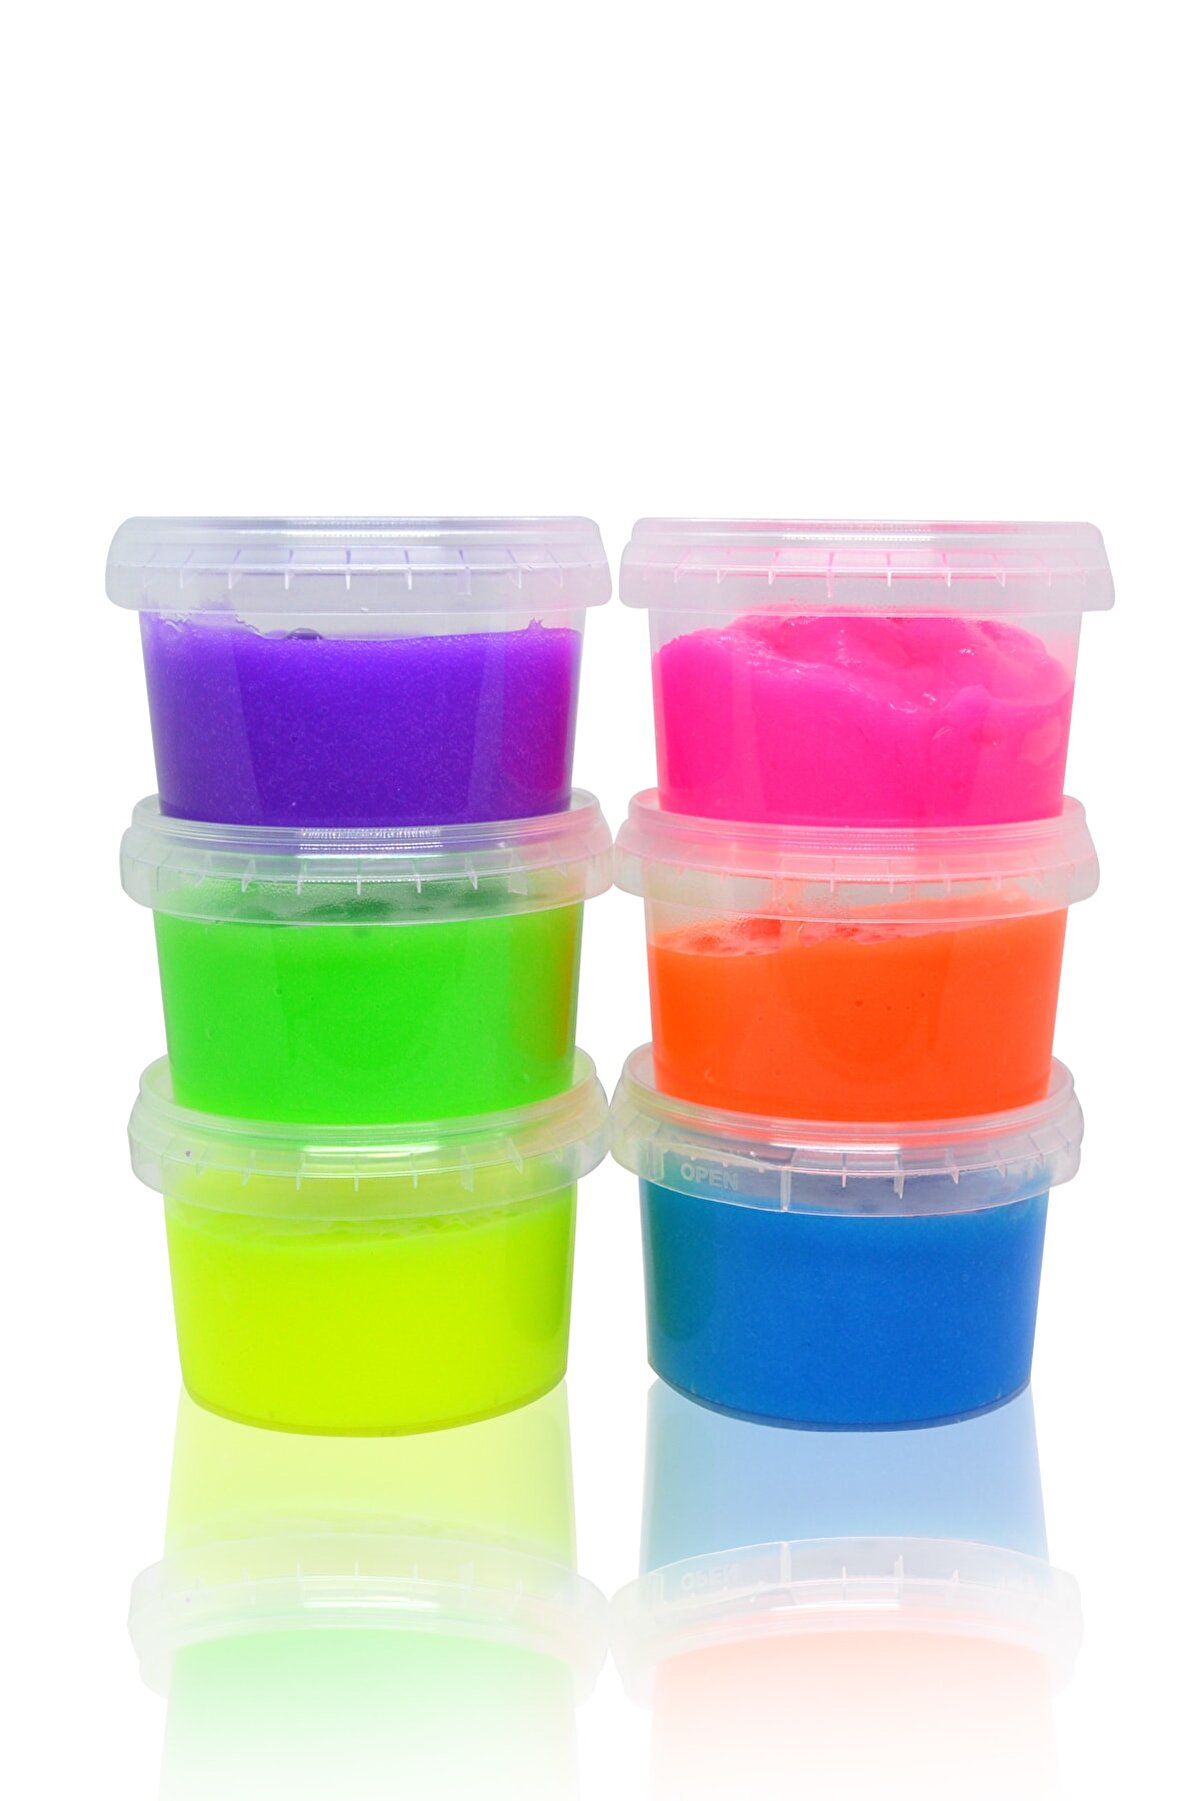 Kids Like 6 Lı 180 Gr Neon Renkler Hazır Slime - Kaliteli Ürün Toplam 1080 Gr- Ele Yapışmaz